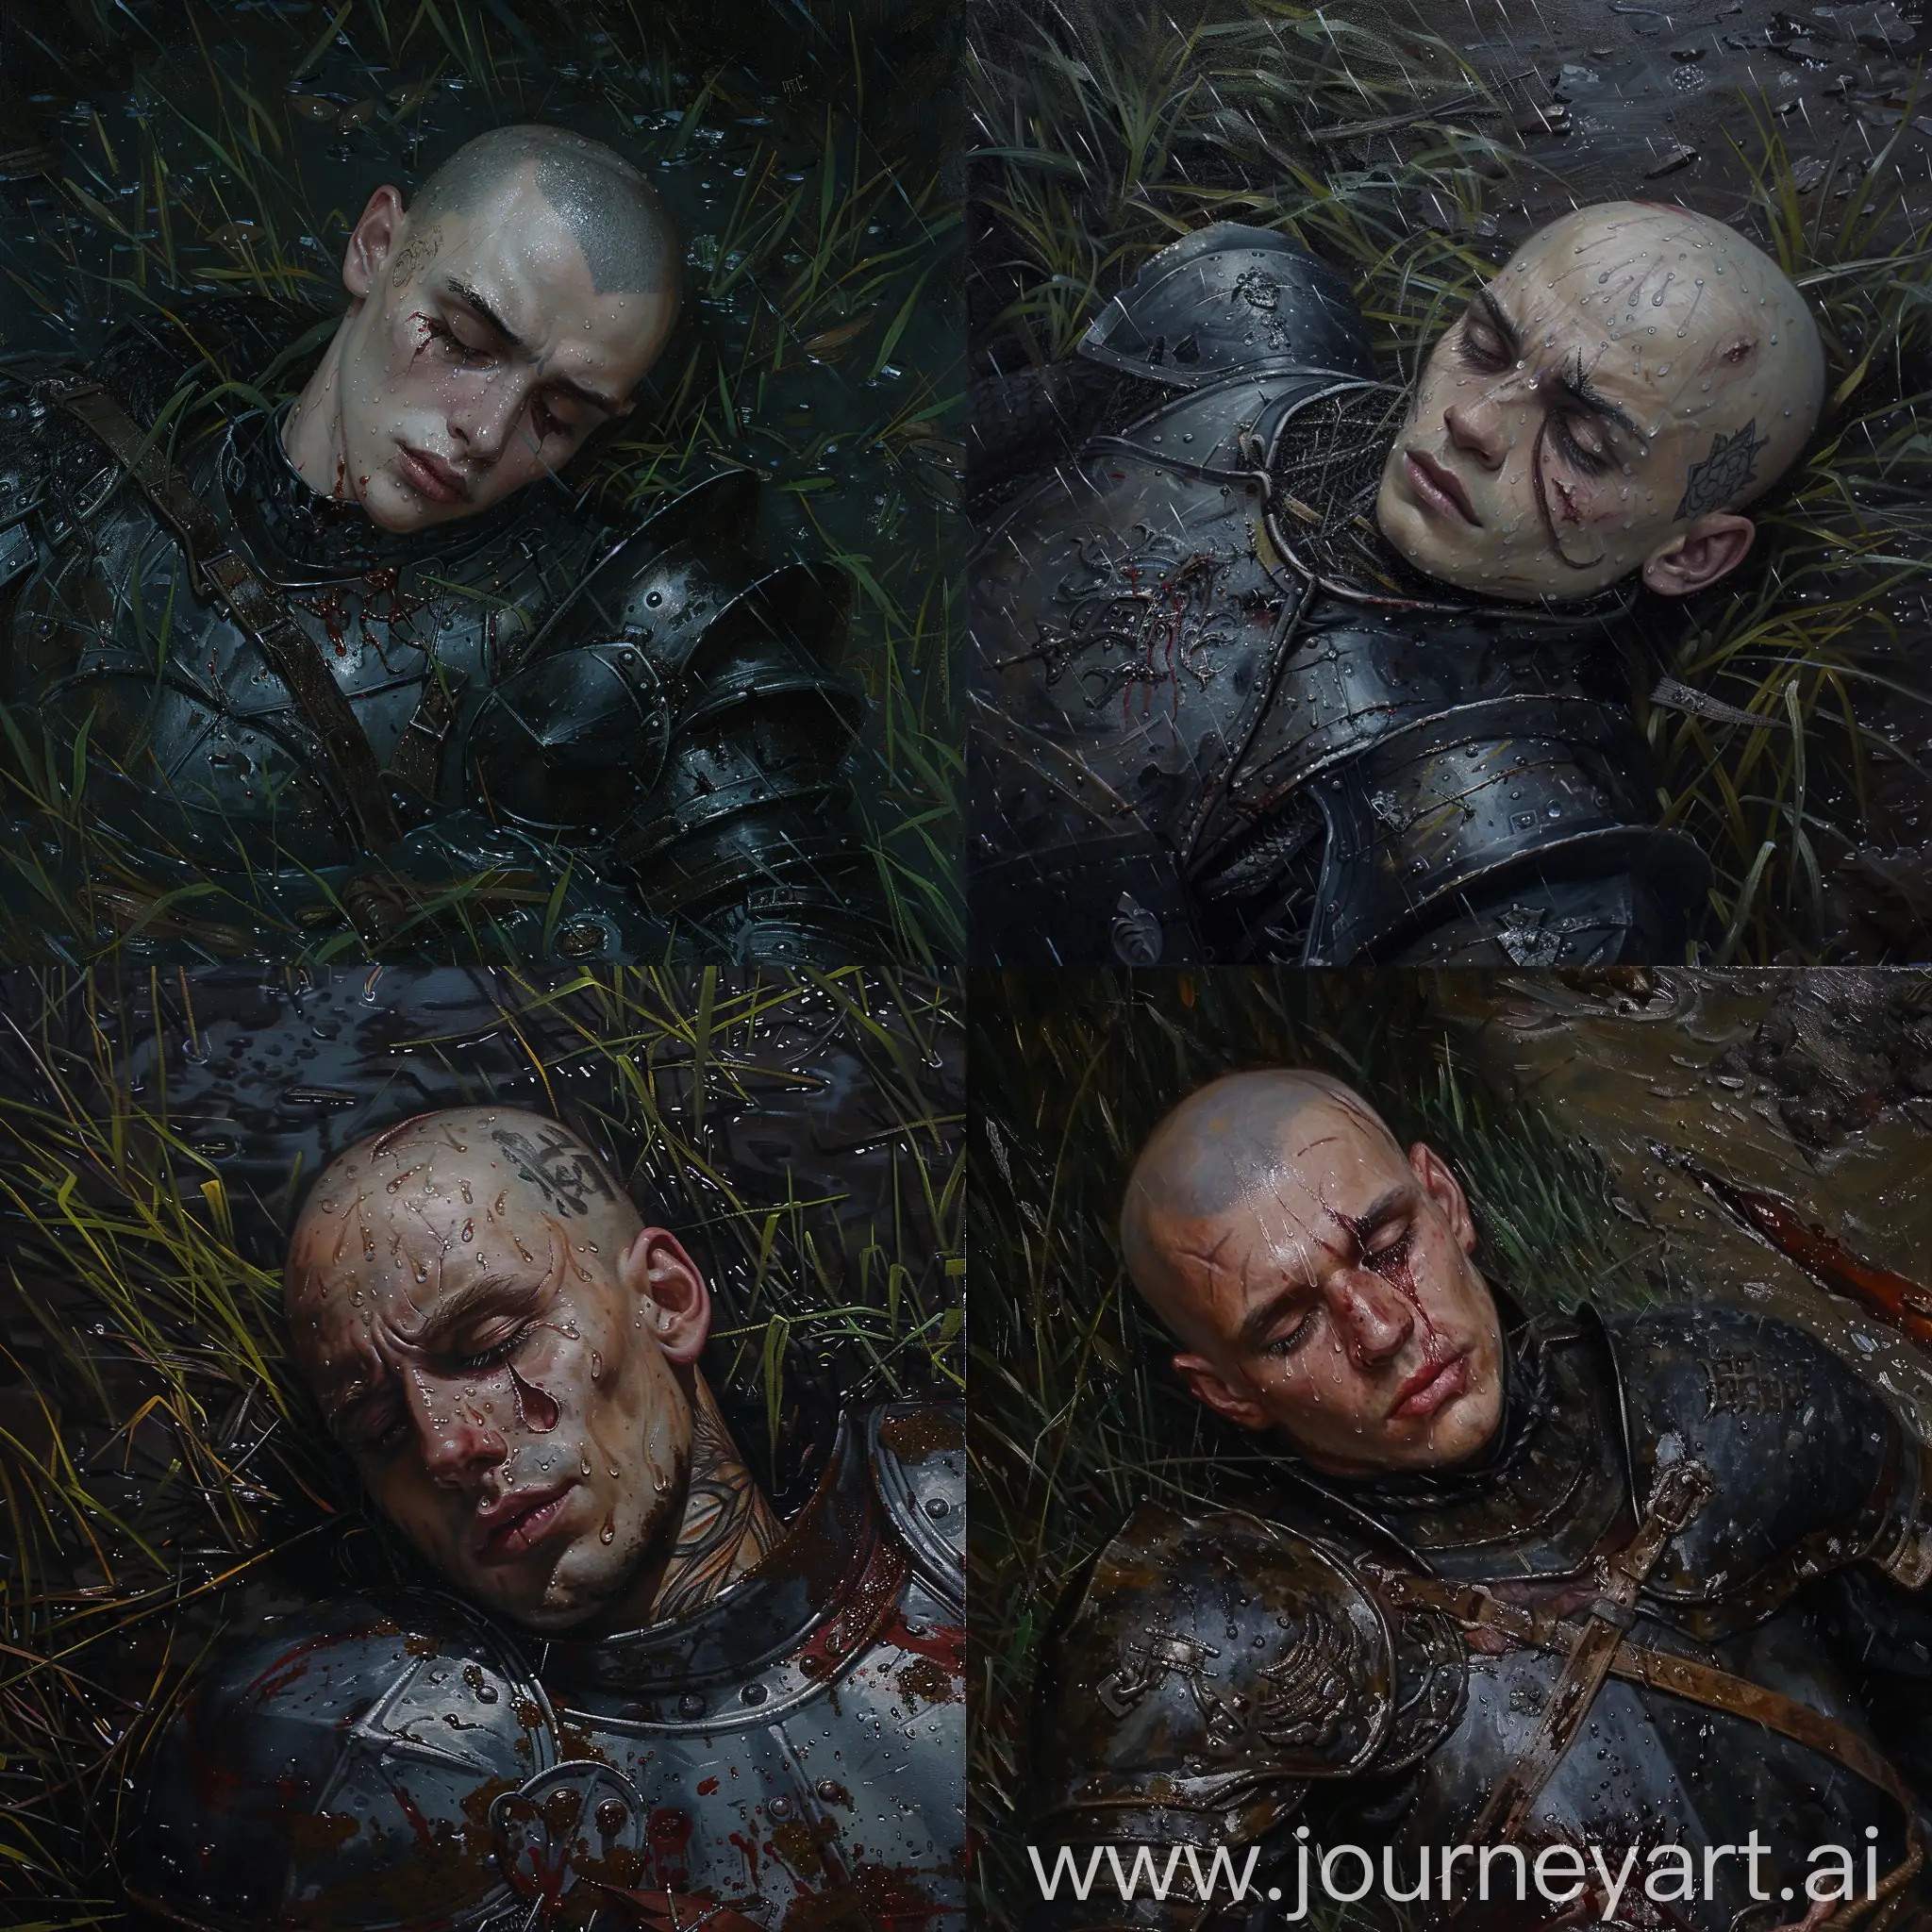 Russian-Man-in-Armor-Lying-Dead-in-Rain-Leonardo-da-Vinci-Style-Oil-Painting